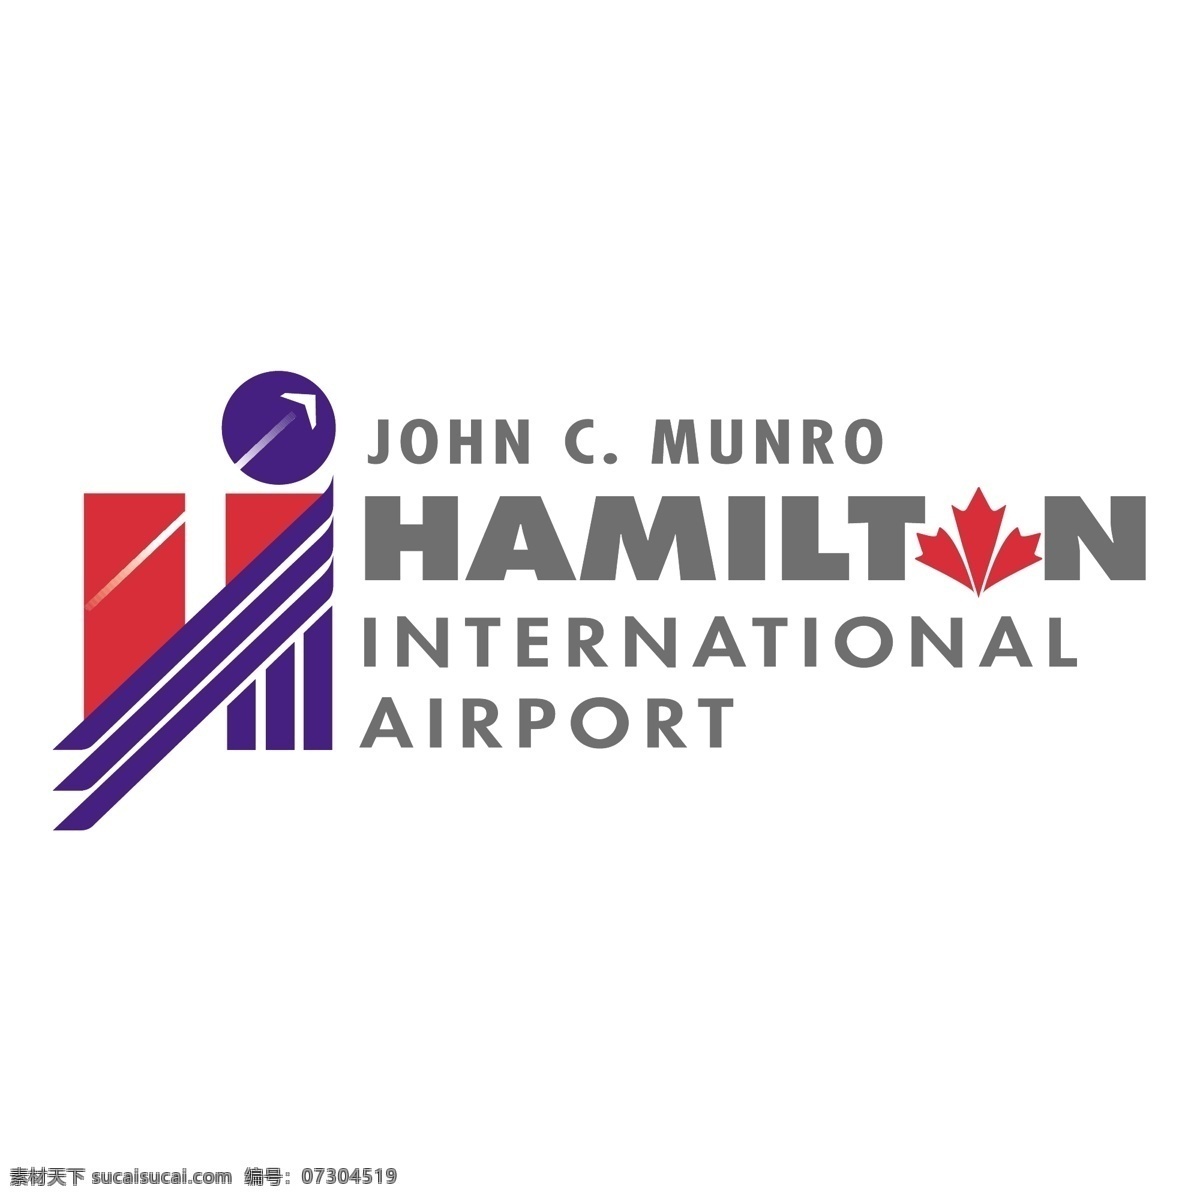 约翰 c 蒙罗 汉密尔顿 国际机场 免费 c. 标志 白色